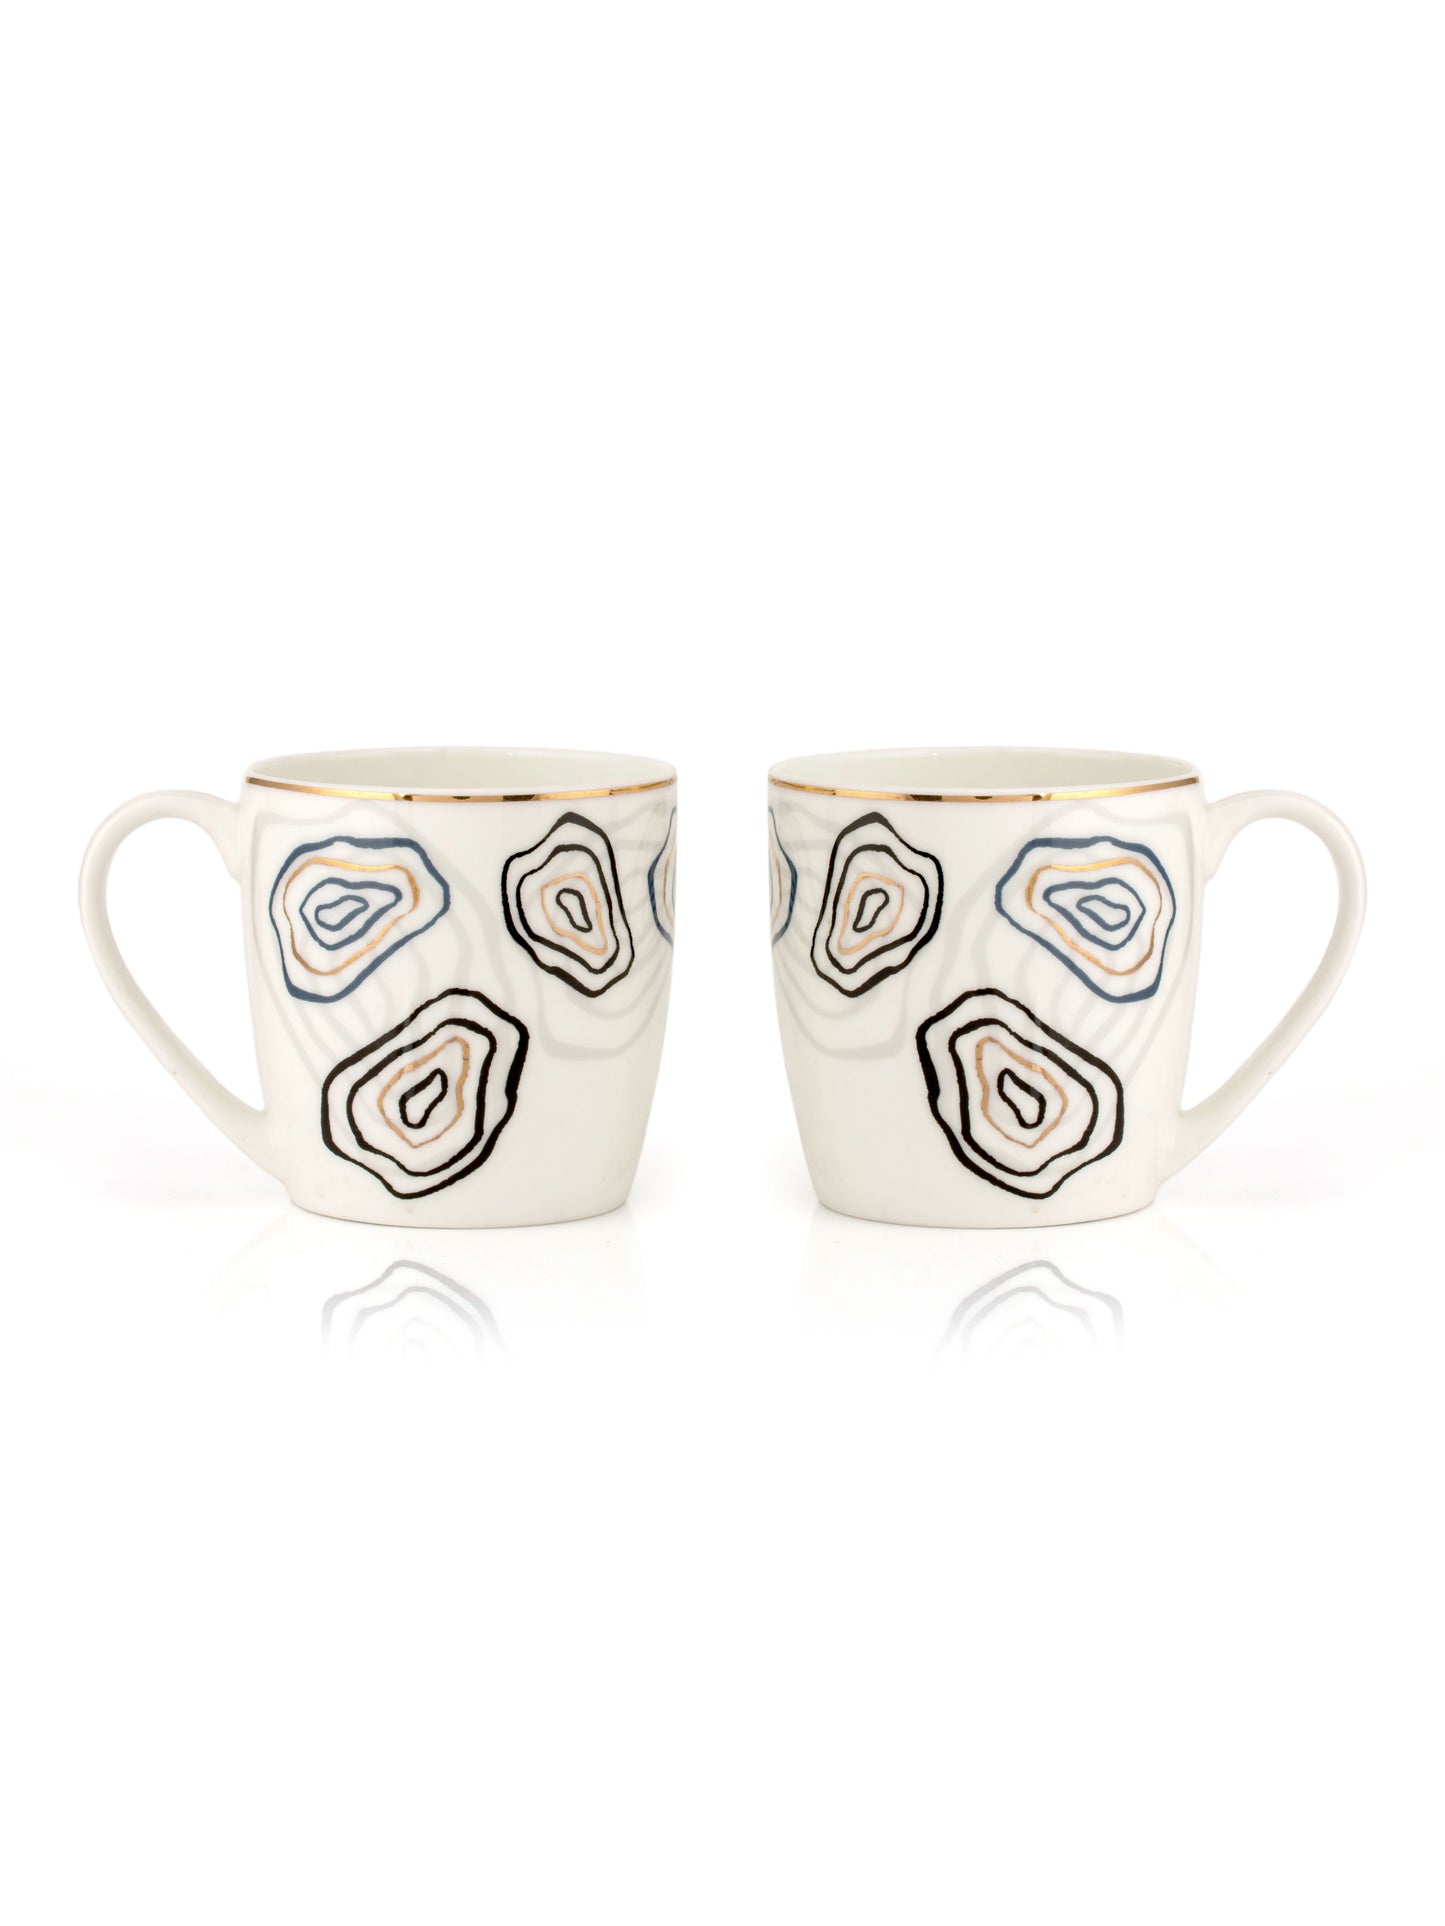 JCPL Alton Posh Coffee & Tea Mug Set of 6 (D405)